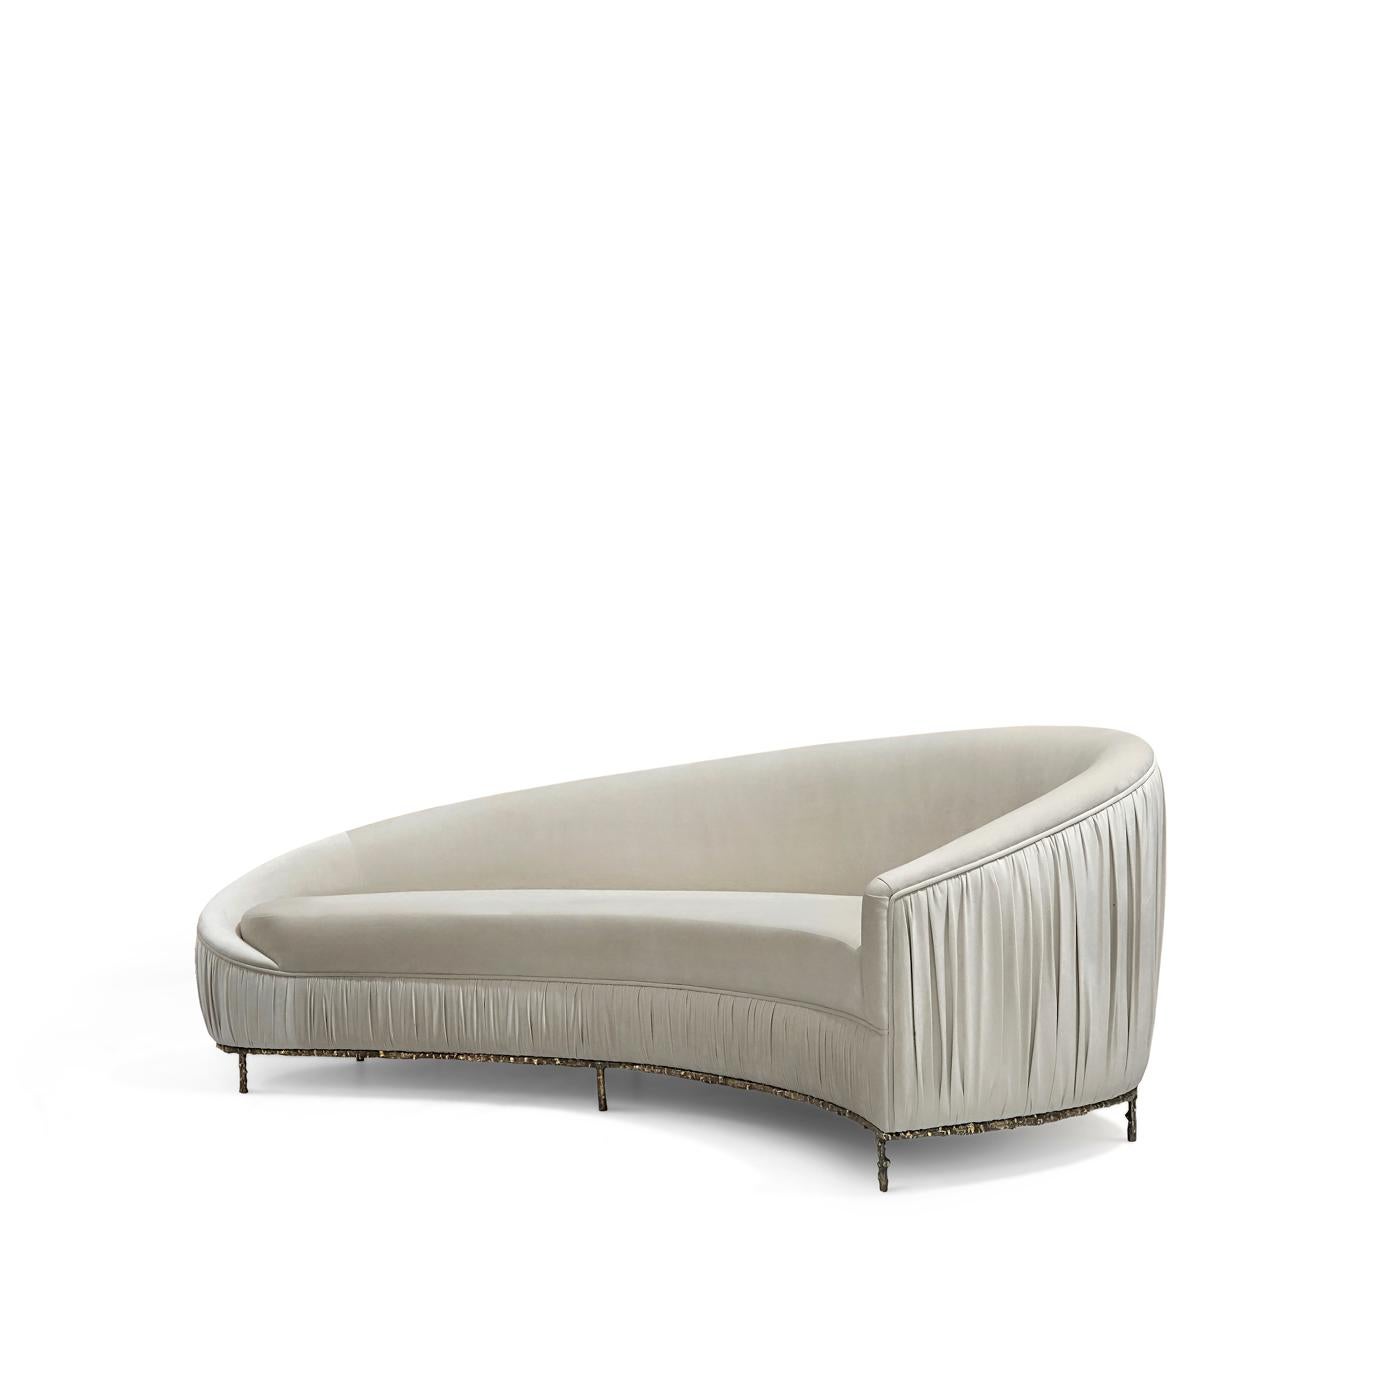 Sexy, geheimnisvolle und ununterbrochene Linien verleihen diesem Sofa einen hochgelobten Glamour. Dieses üppige Loungesofa ist mit kostbarem Stoff gepolstert und wird von einem Messinggussgestell getragen, das an einen Dornbuschzweig erinnert.